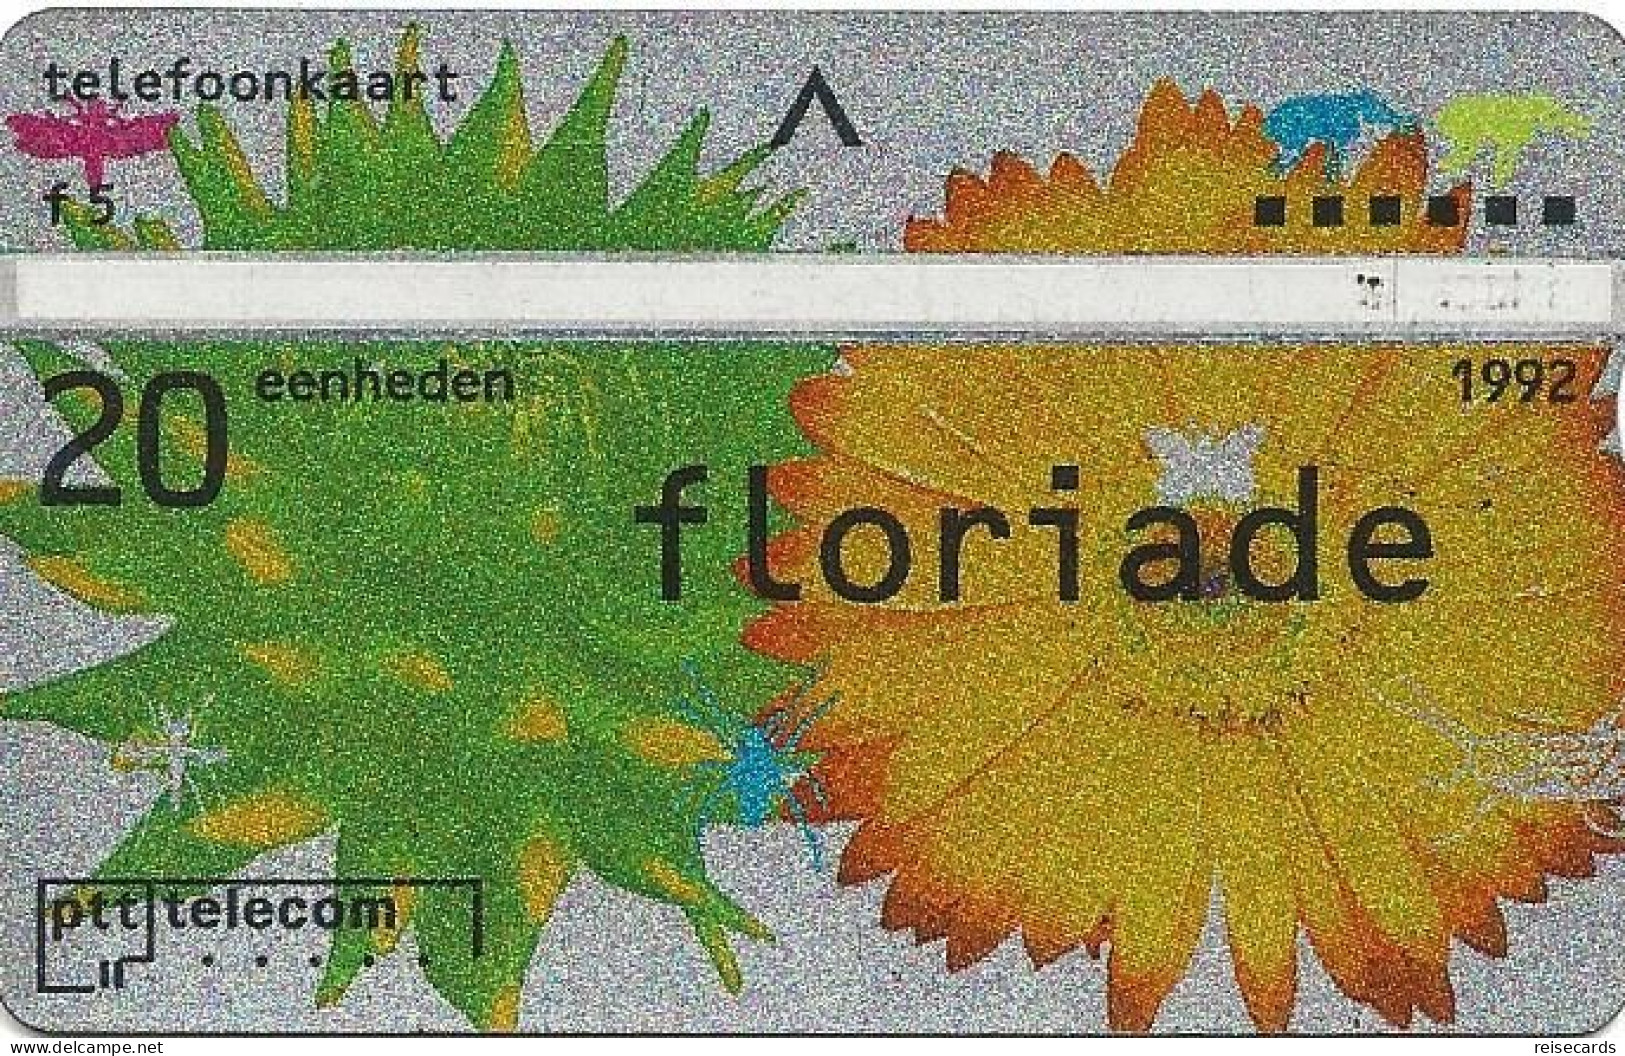 Netherlands: Ptt Telecom - 1992 202C Floriade - Private